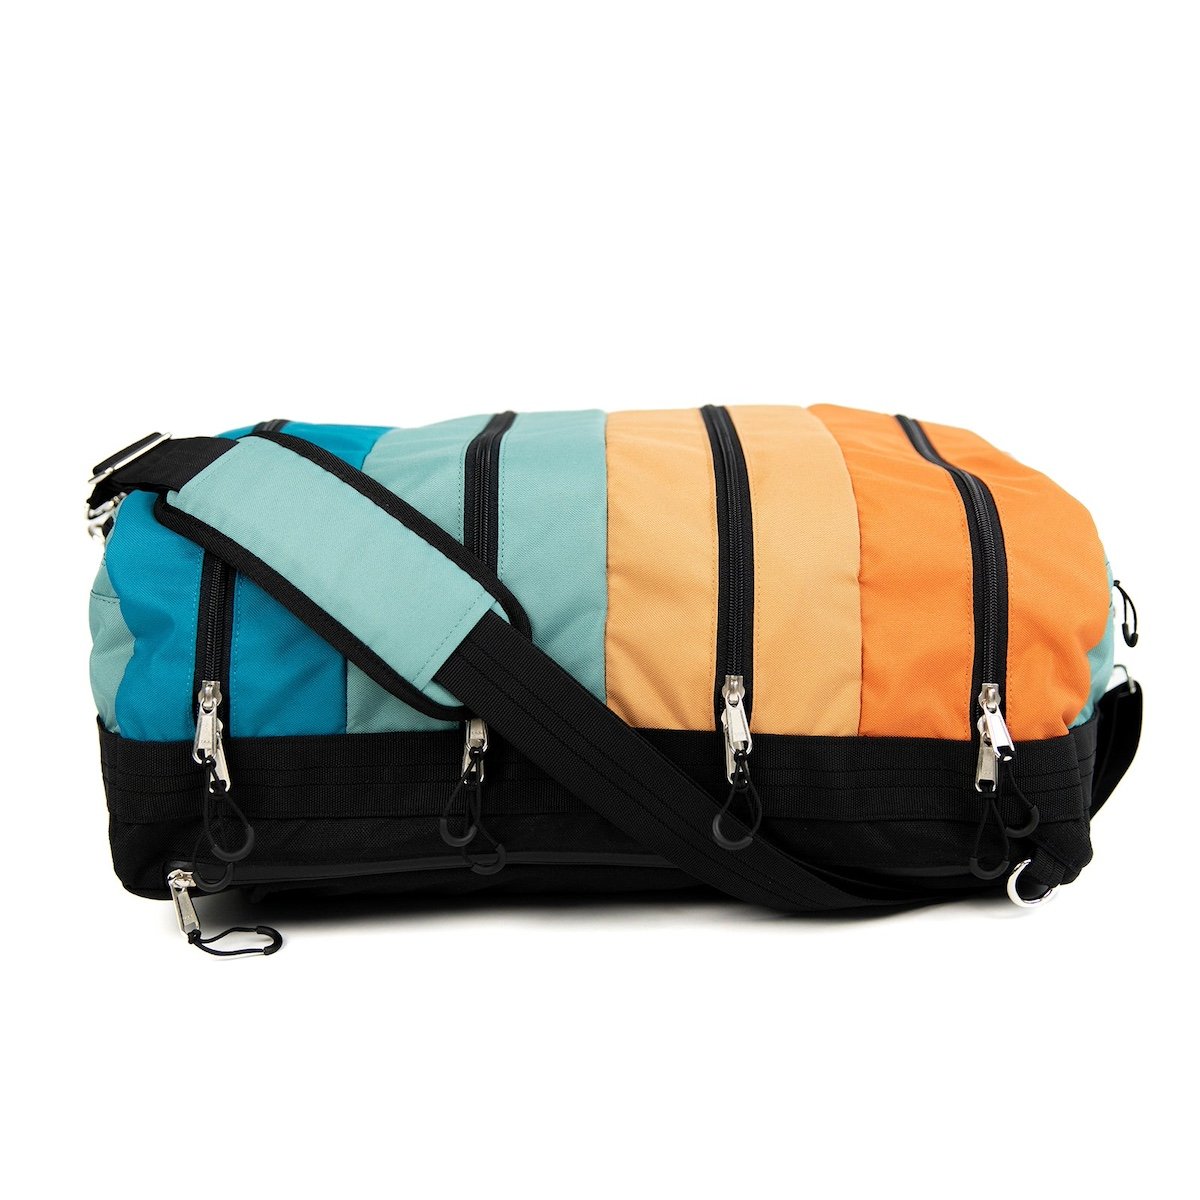 TOBIQ Travel bag